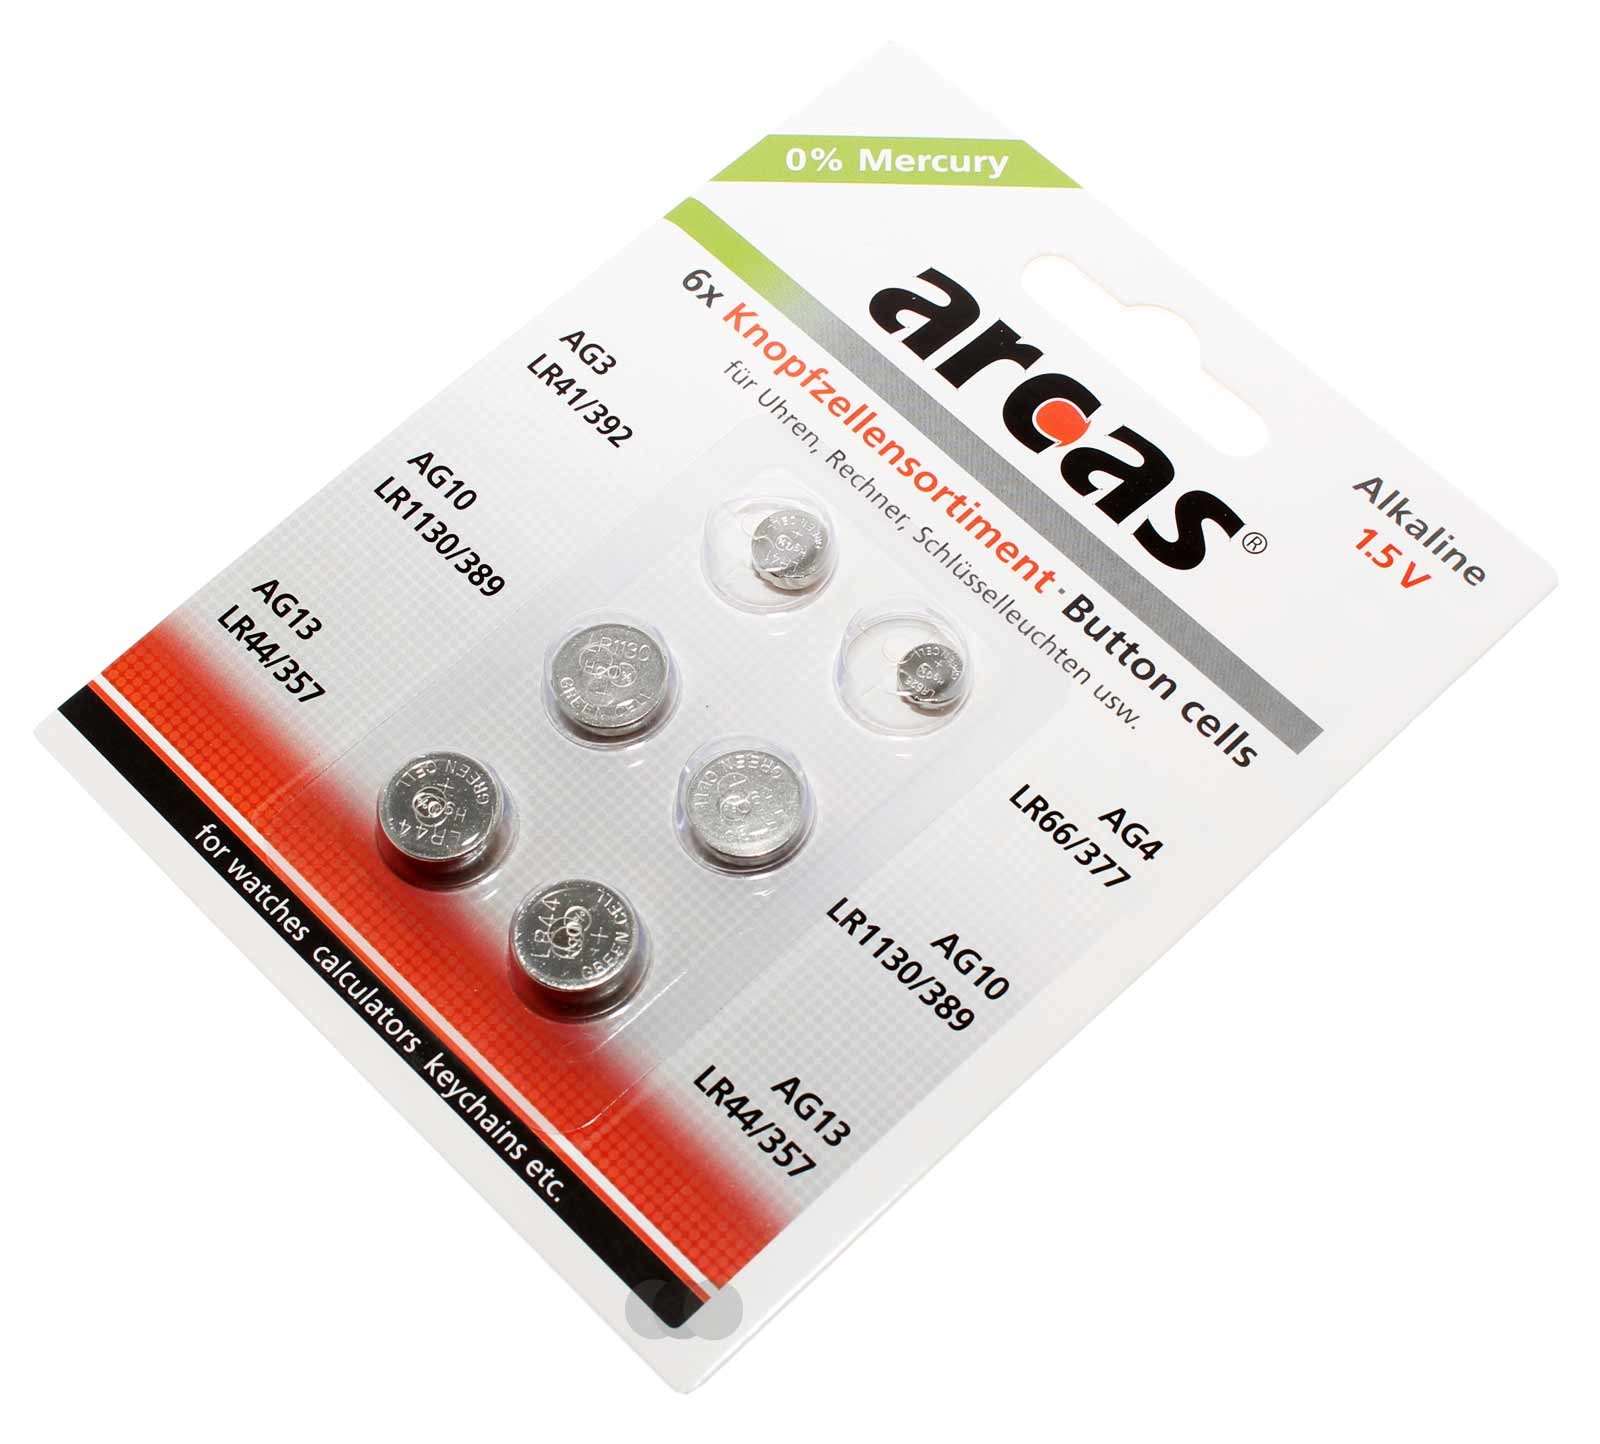 6x Arcas Knopfzellen Batterie Alkaline 1,5V  AG3, AG4, AG10, AG13, LR41/392, LR66/377, LR1130/389, LR44/357